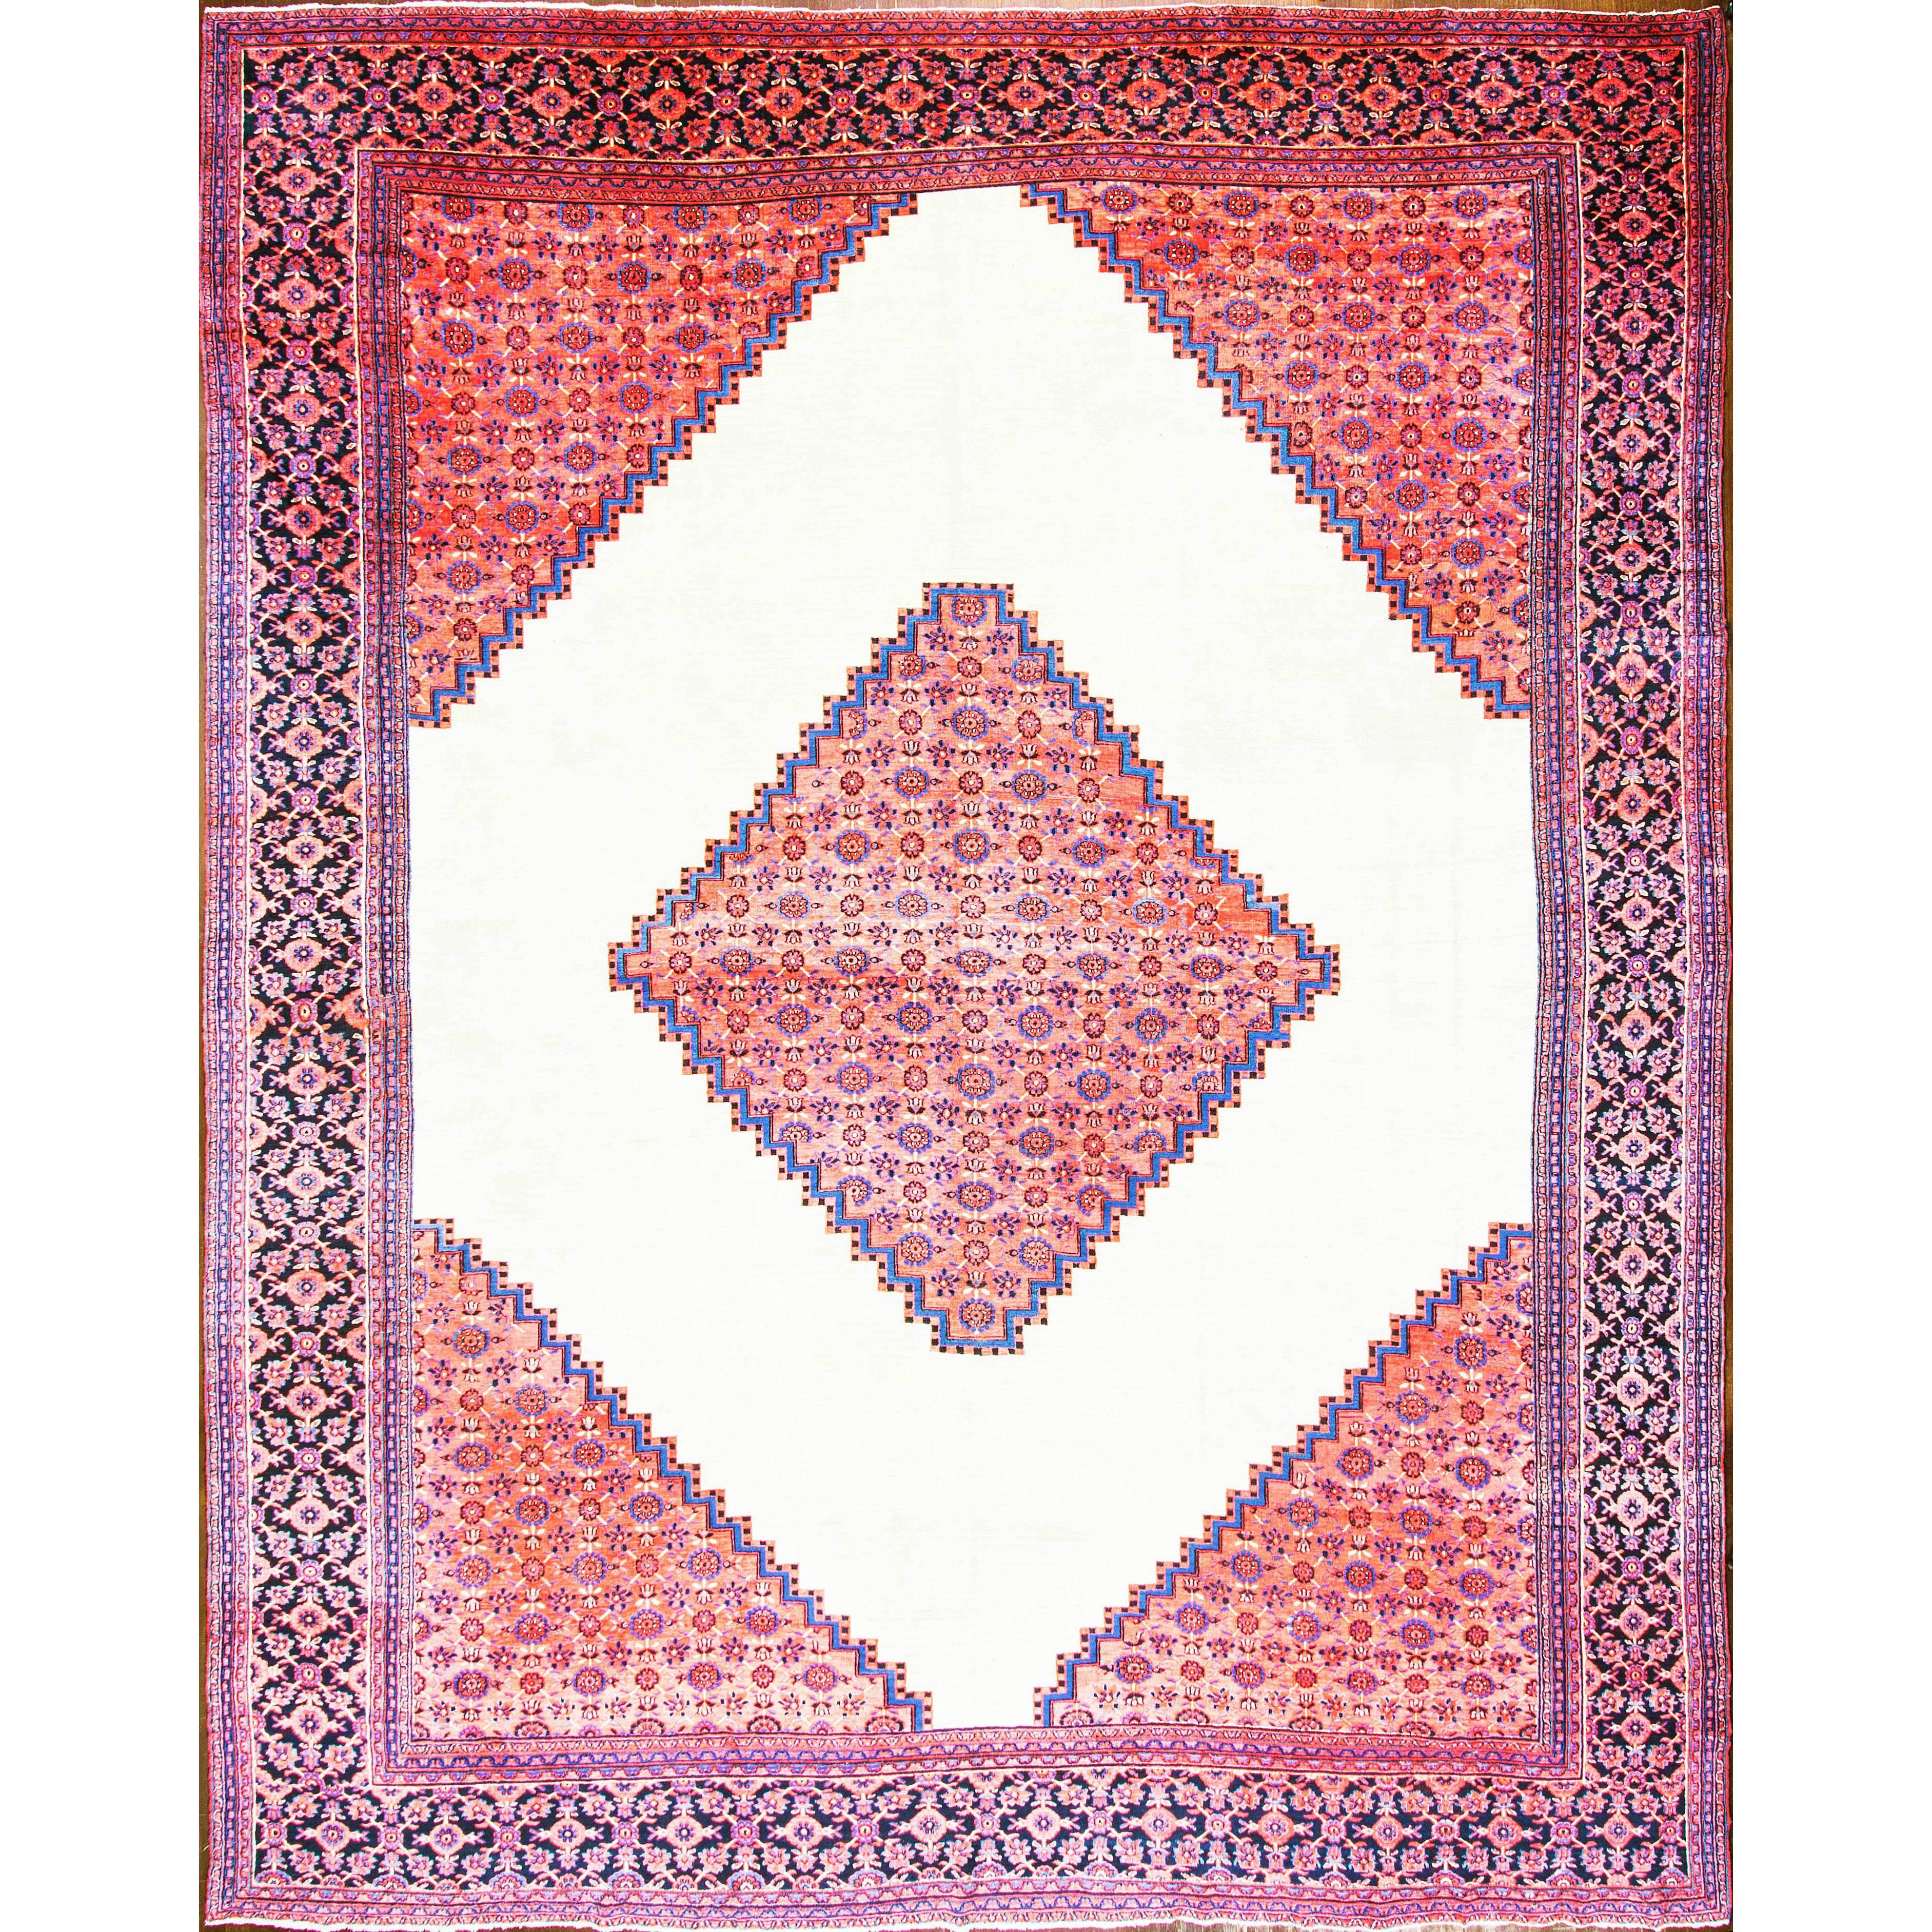  Antique Persian Dorosch/ Serapi Design Carpet